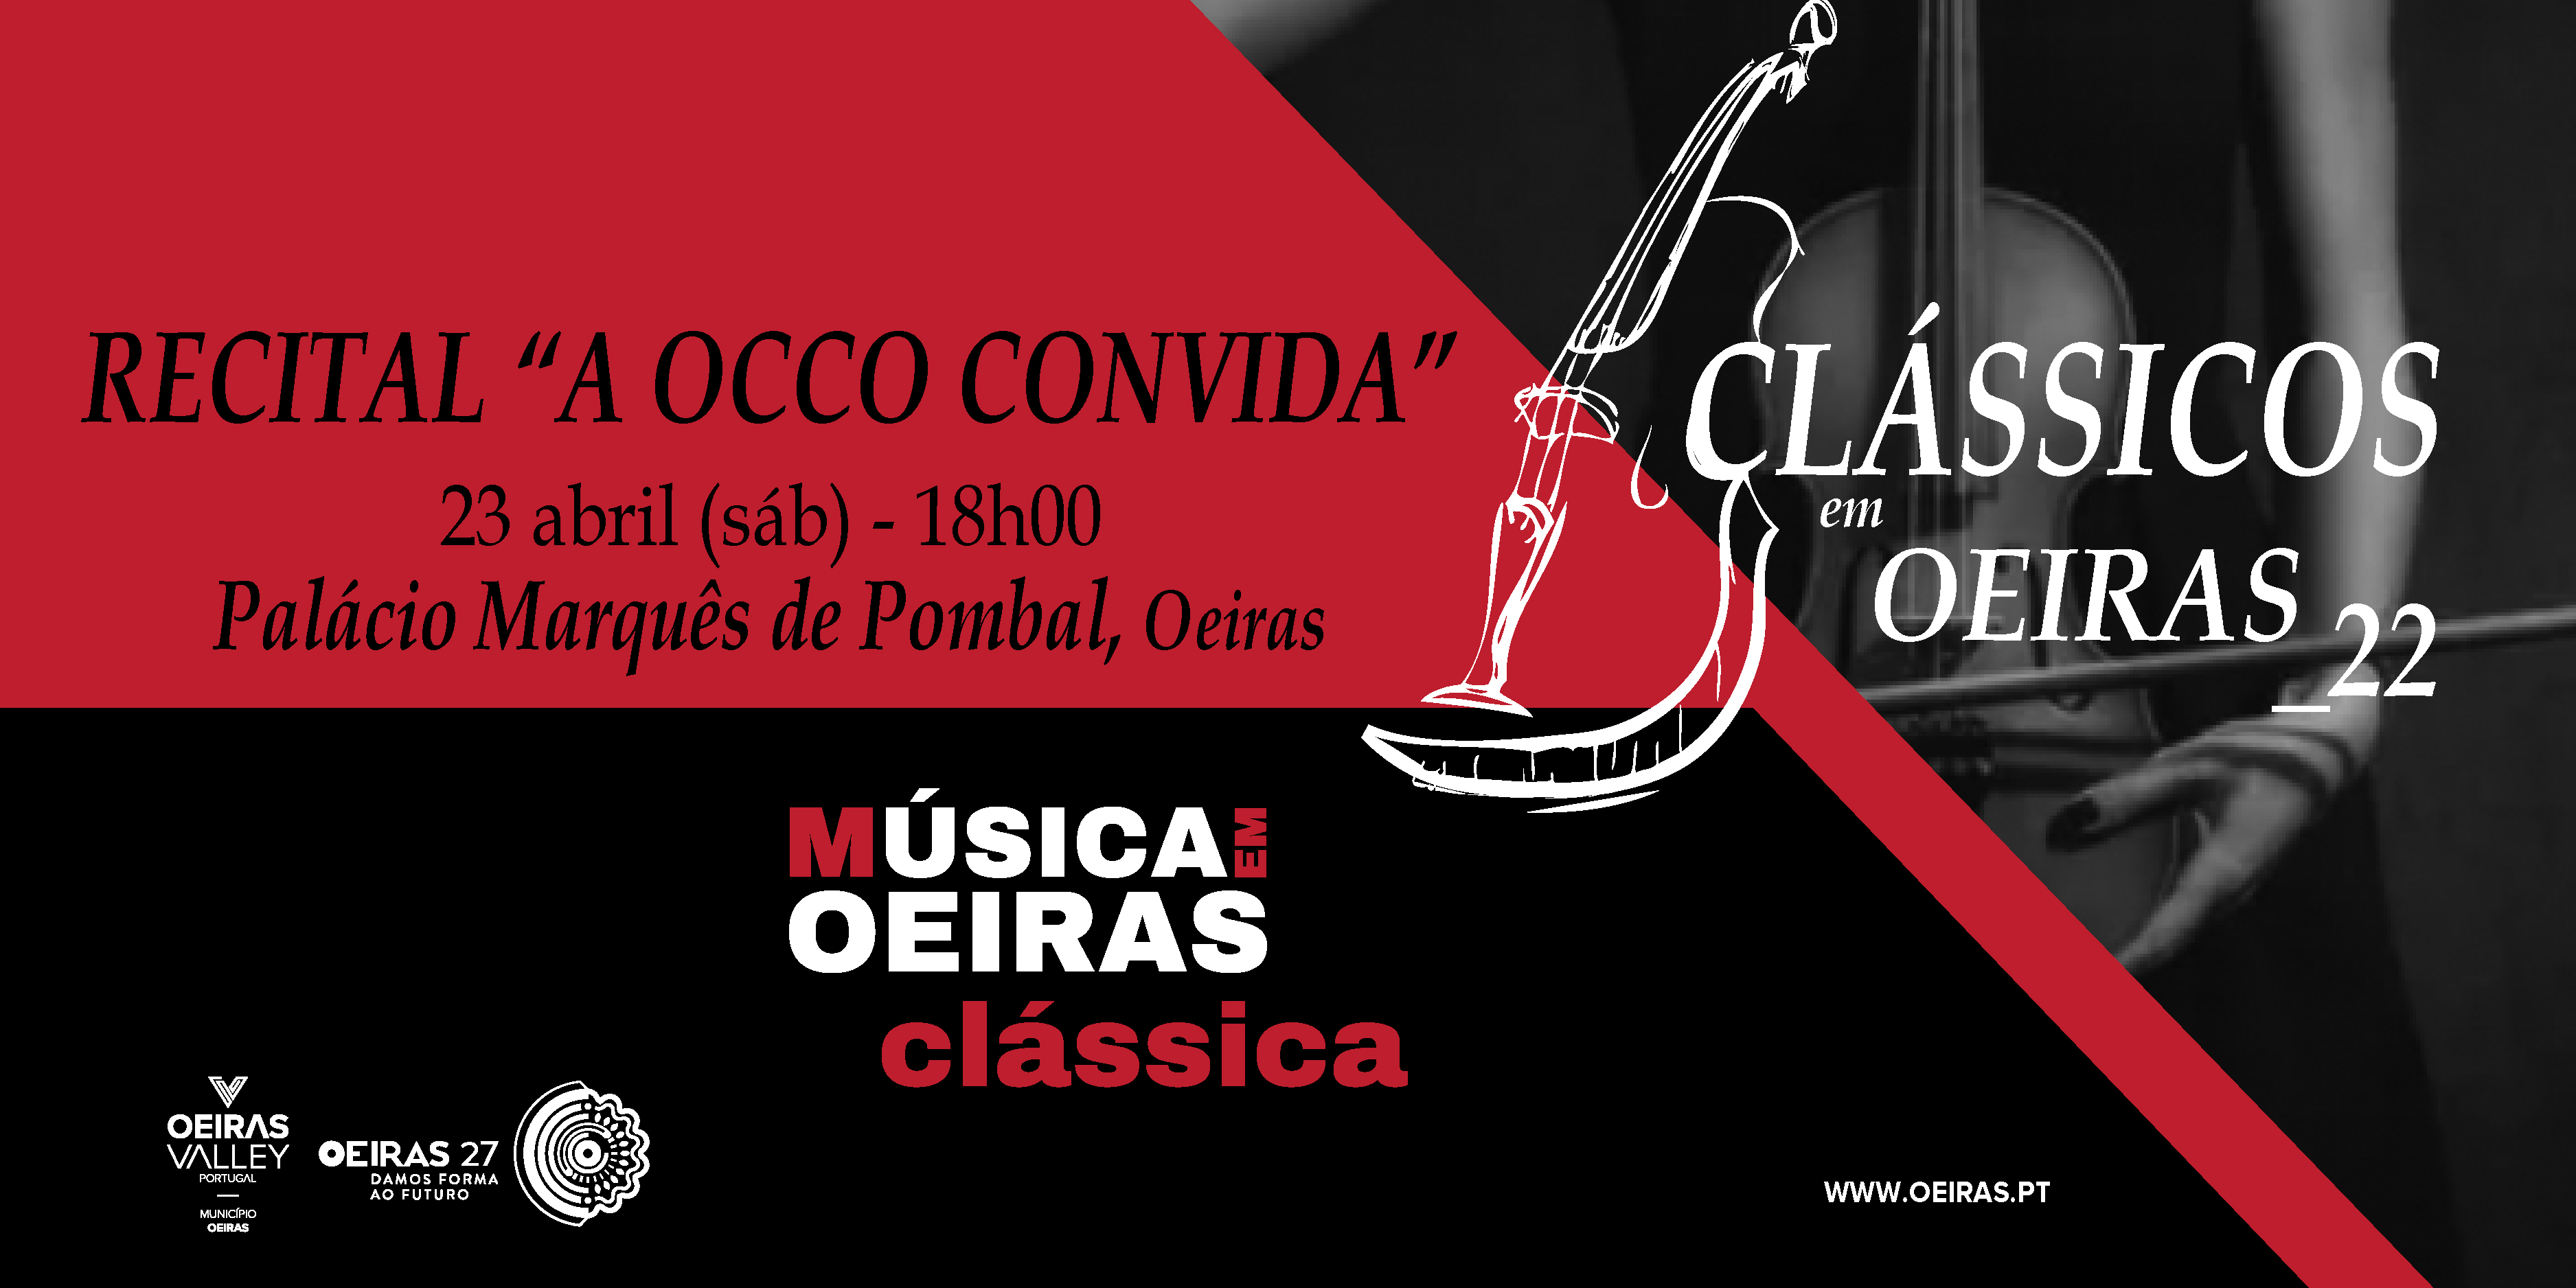 Clássicos em Oeiras - Concerto 'A OCCO Convida'